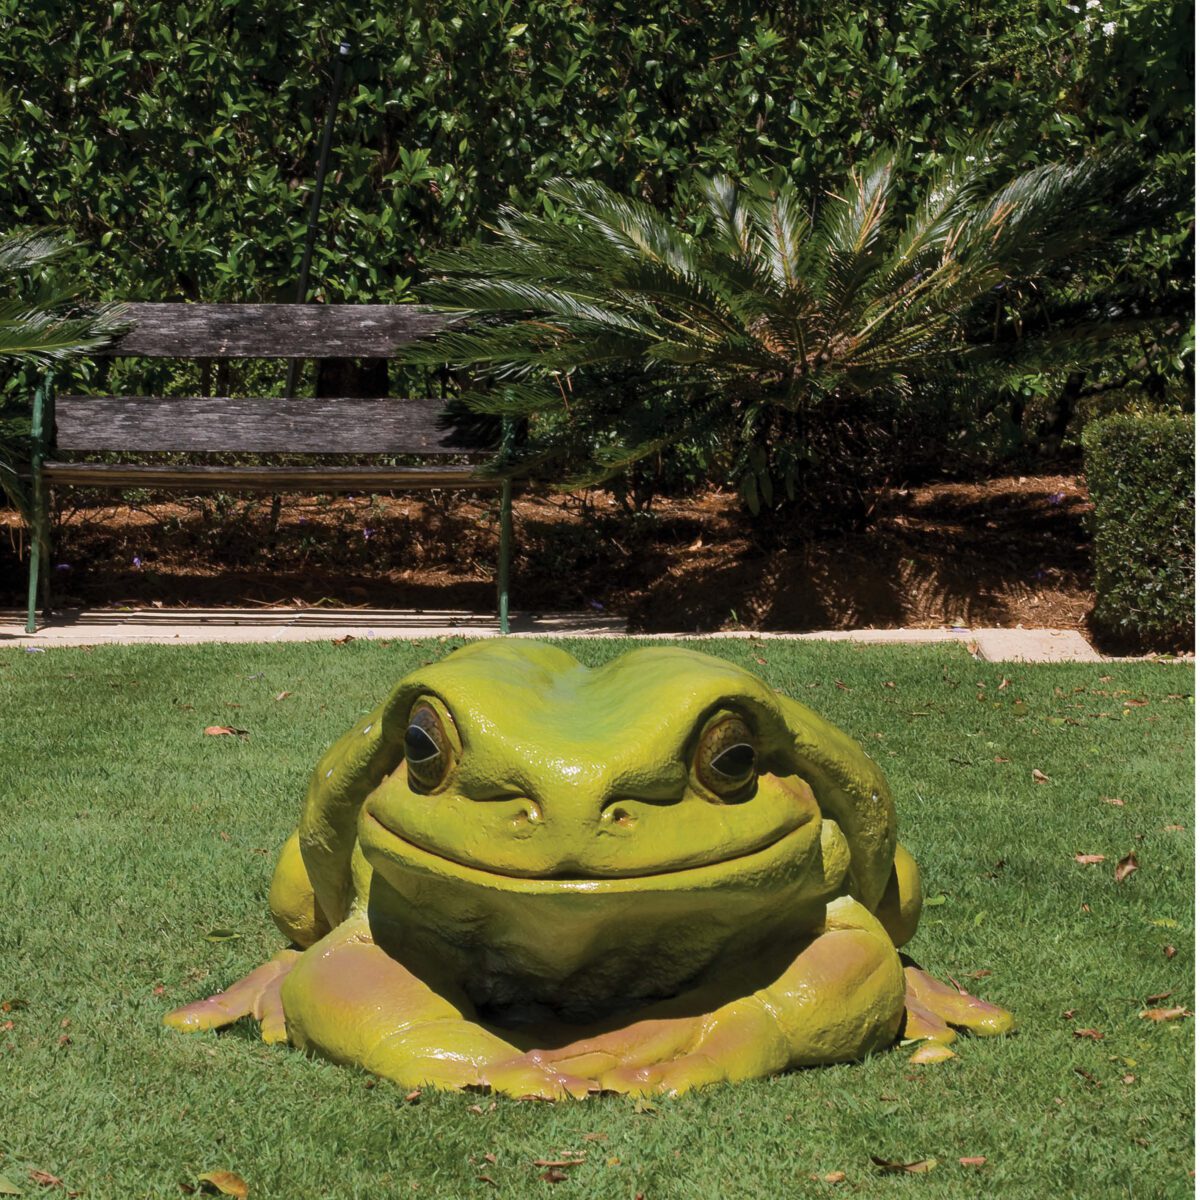 Giant Green Tree Frog Sculptures In Australia